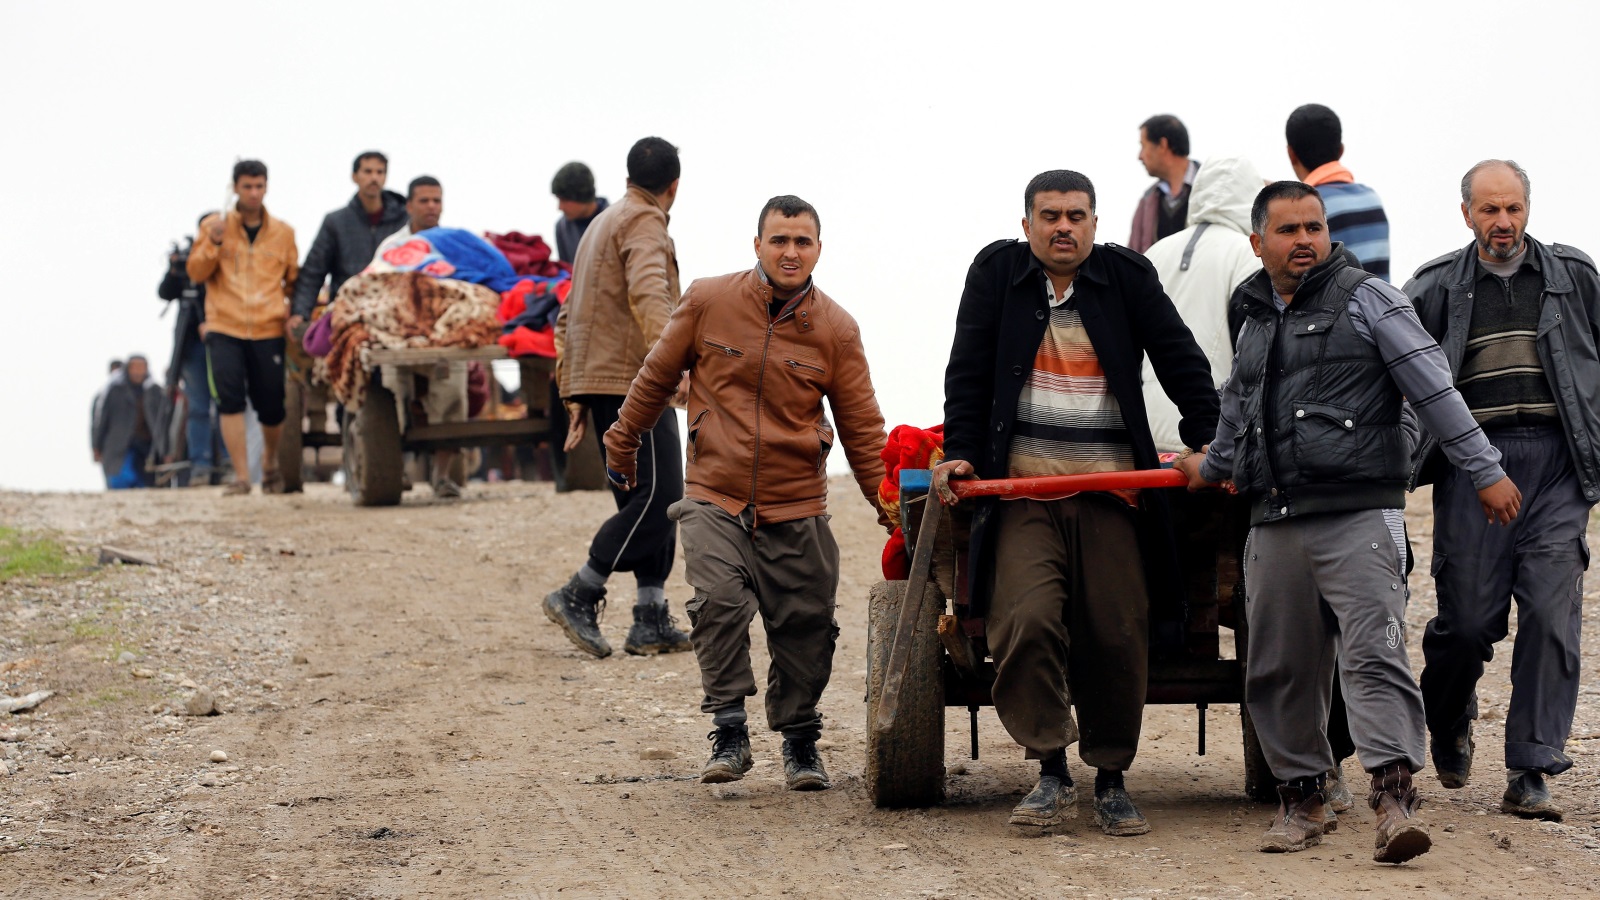 ‪أقارب ينقلون جثث الضحايا المدنيين من جراء القتال بين القوات العراقية وتنظيم الدولة في الموصل‬ أقارب ينقلون جثث الضحايا المدنيين من جراء القتال بين القوات العراقية وتنظيم الدولة في الموصل (رويترز)